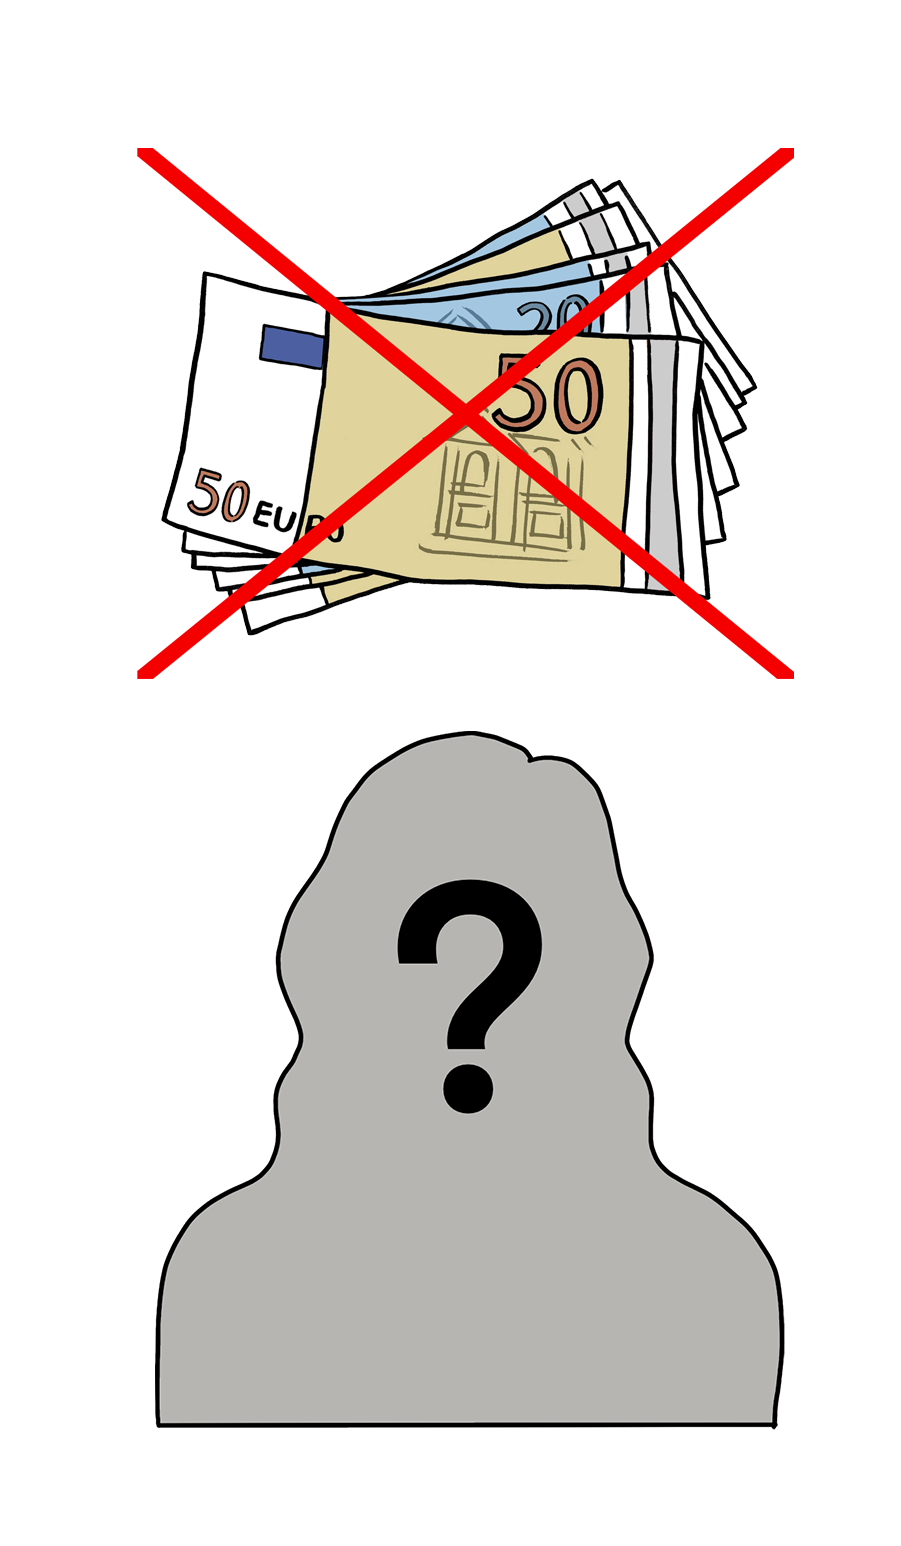 Grafik: Durchgestrichene Geldscheine, darunter ein grauer Umriss einer Person